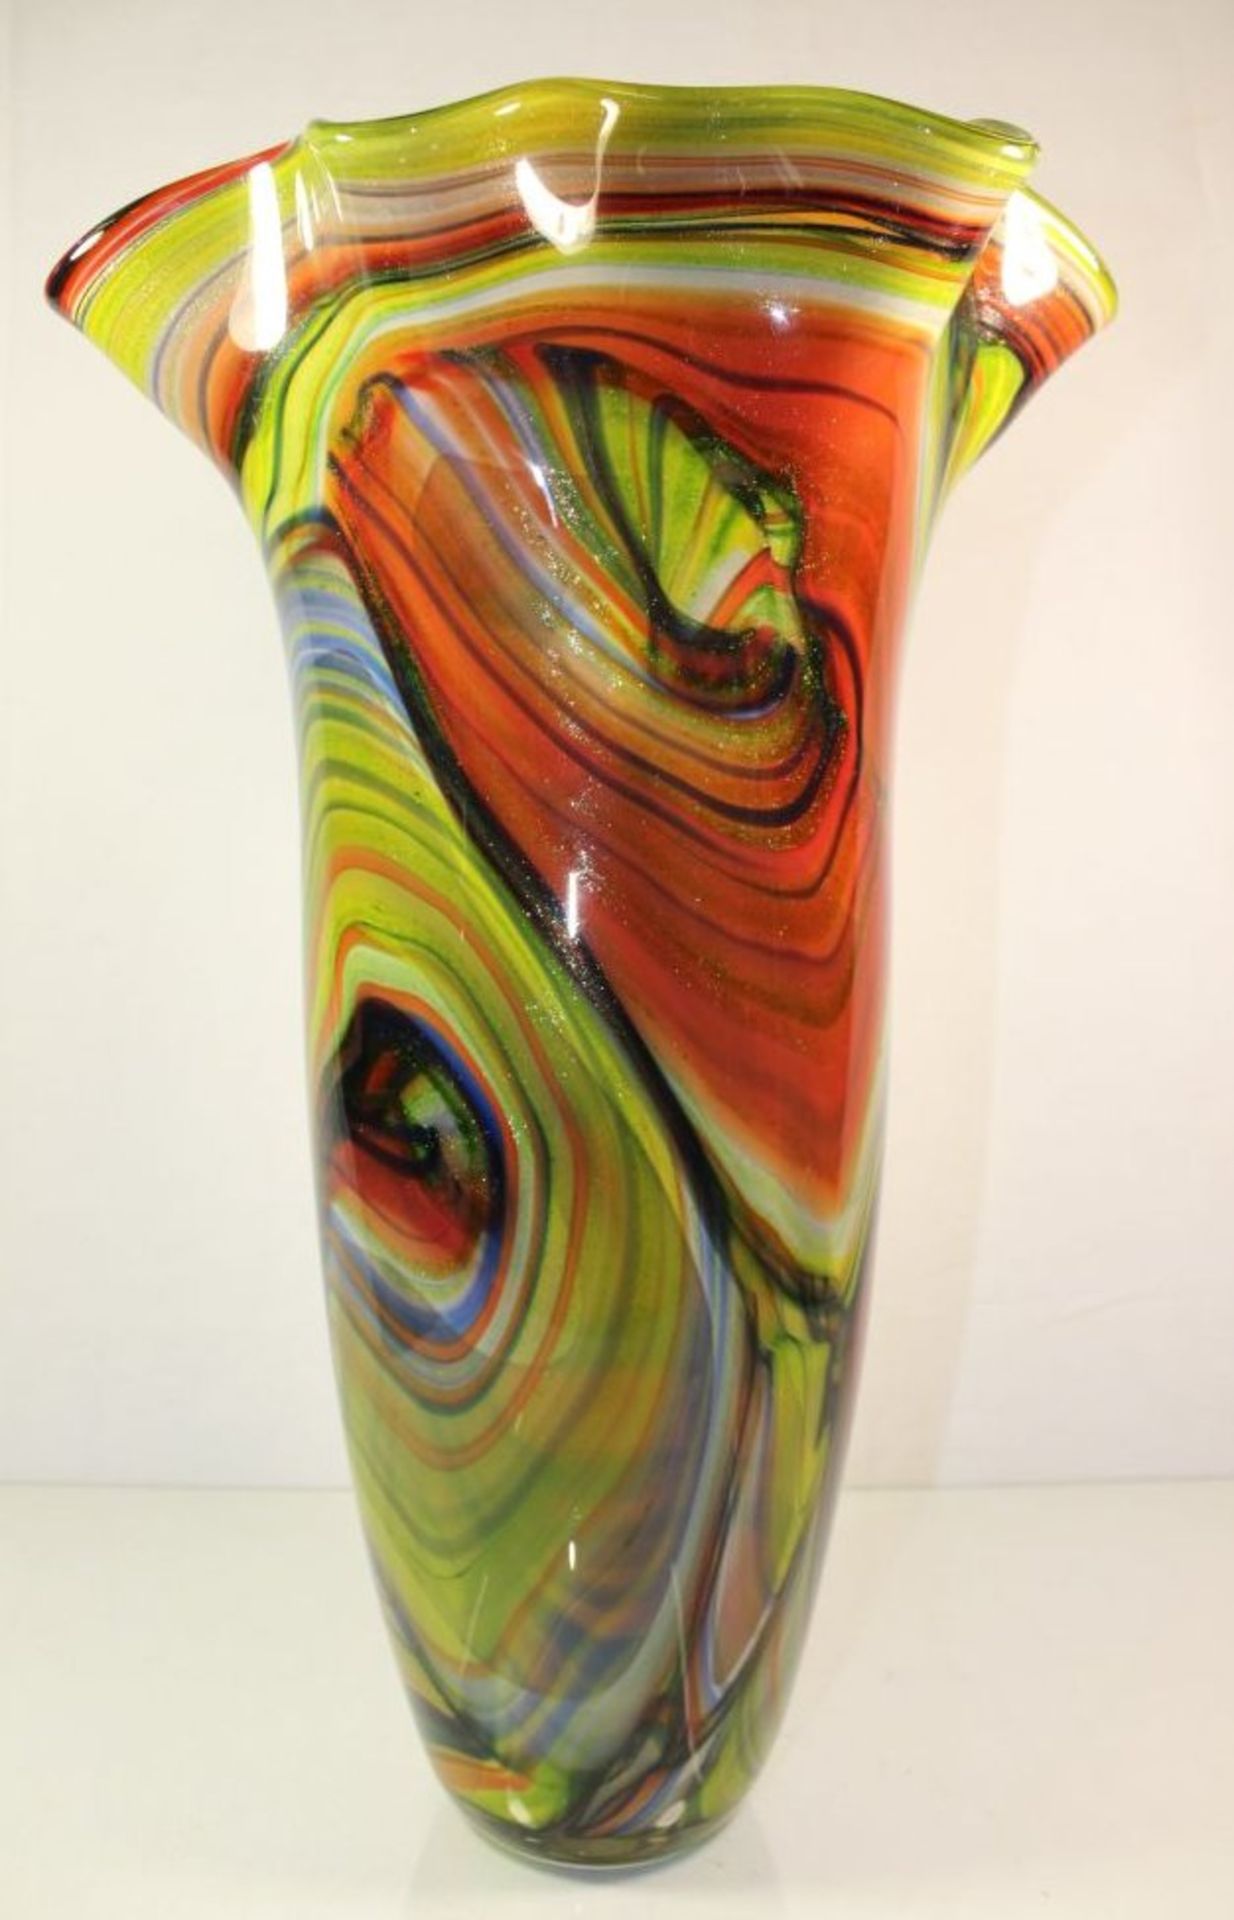 hohe Kunstglas-Vase, farbige Einschmelzungen, H-45cm.- - -22.61 % buyer's premium on the hammer - Bild 2 aus 7